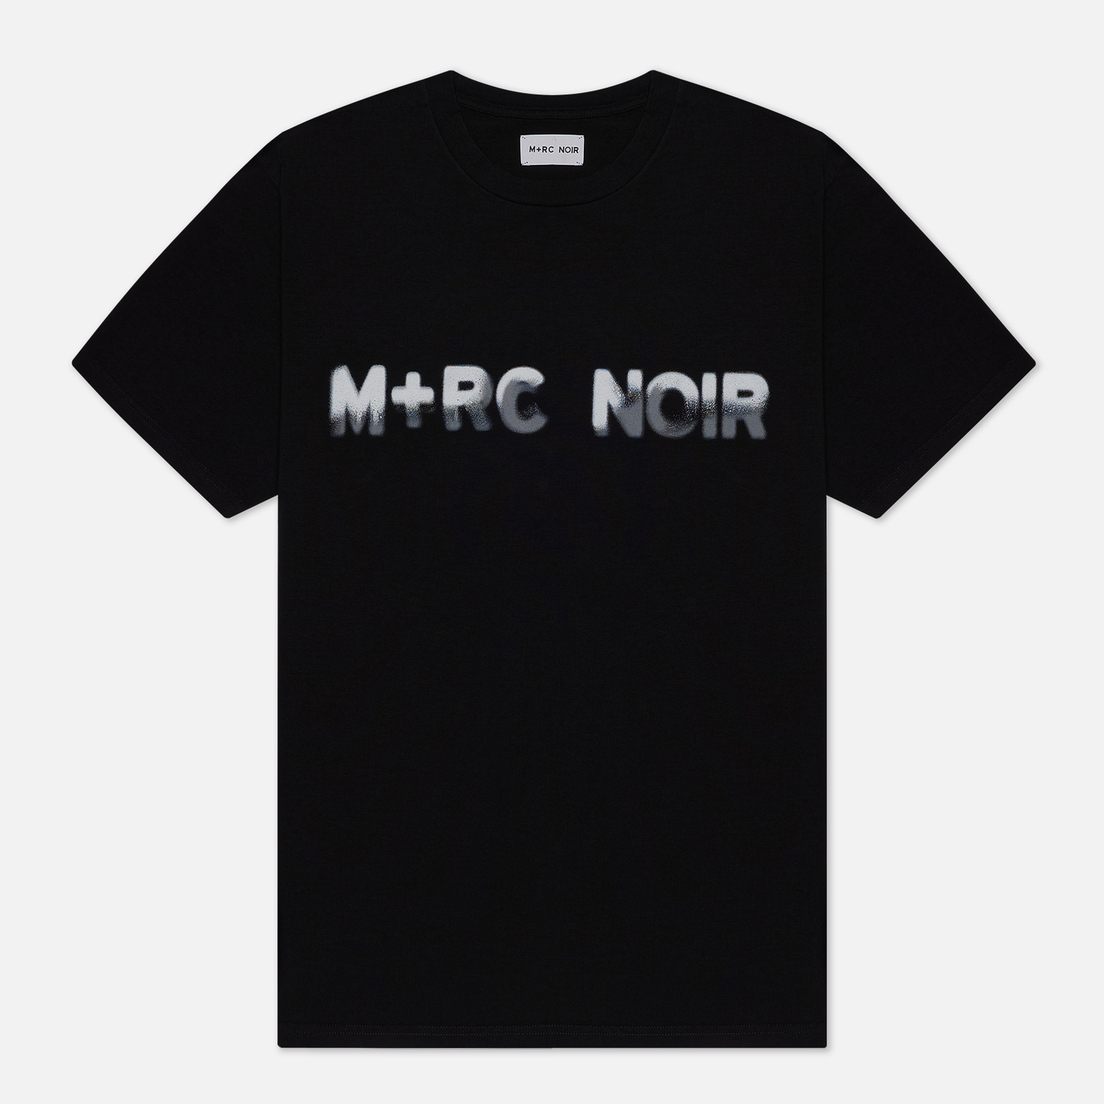 M+RC Noir Мужская футболка Spray